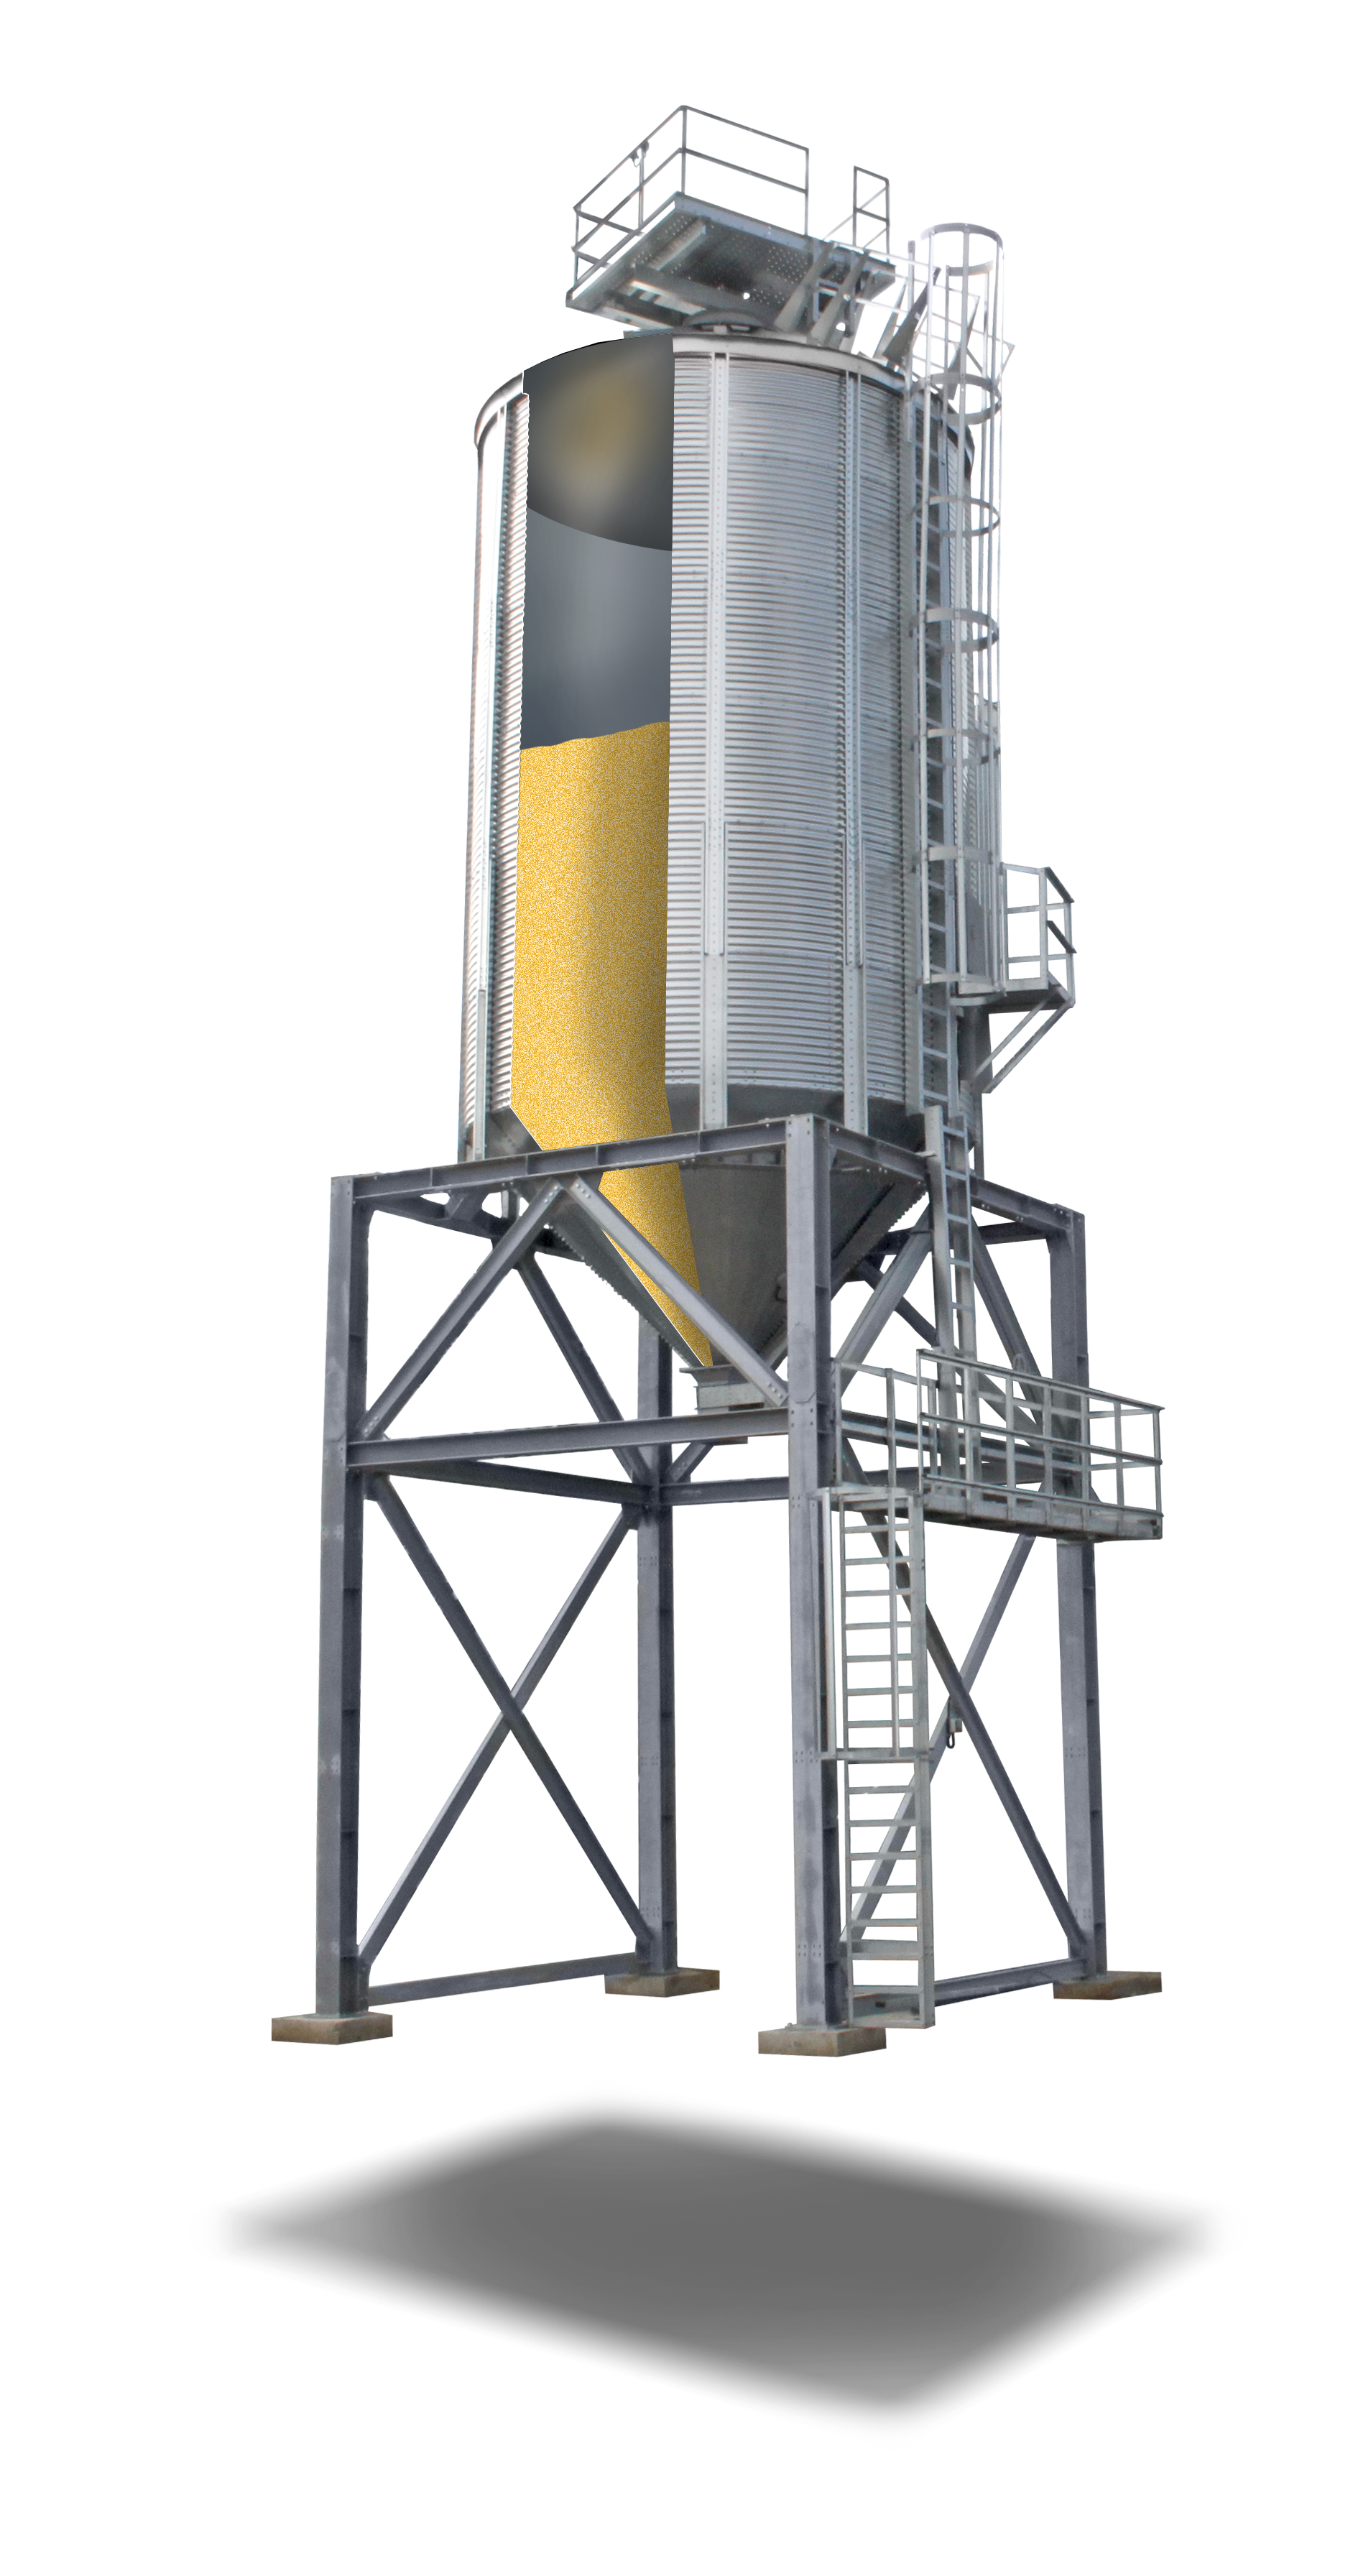 Cone-type, shipping silos